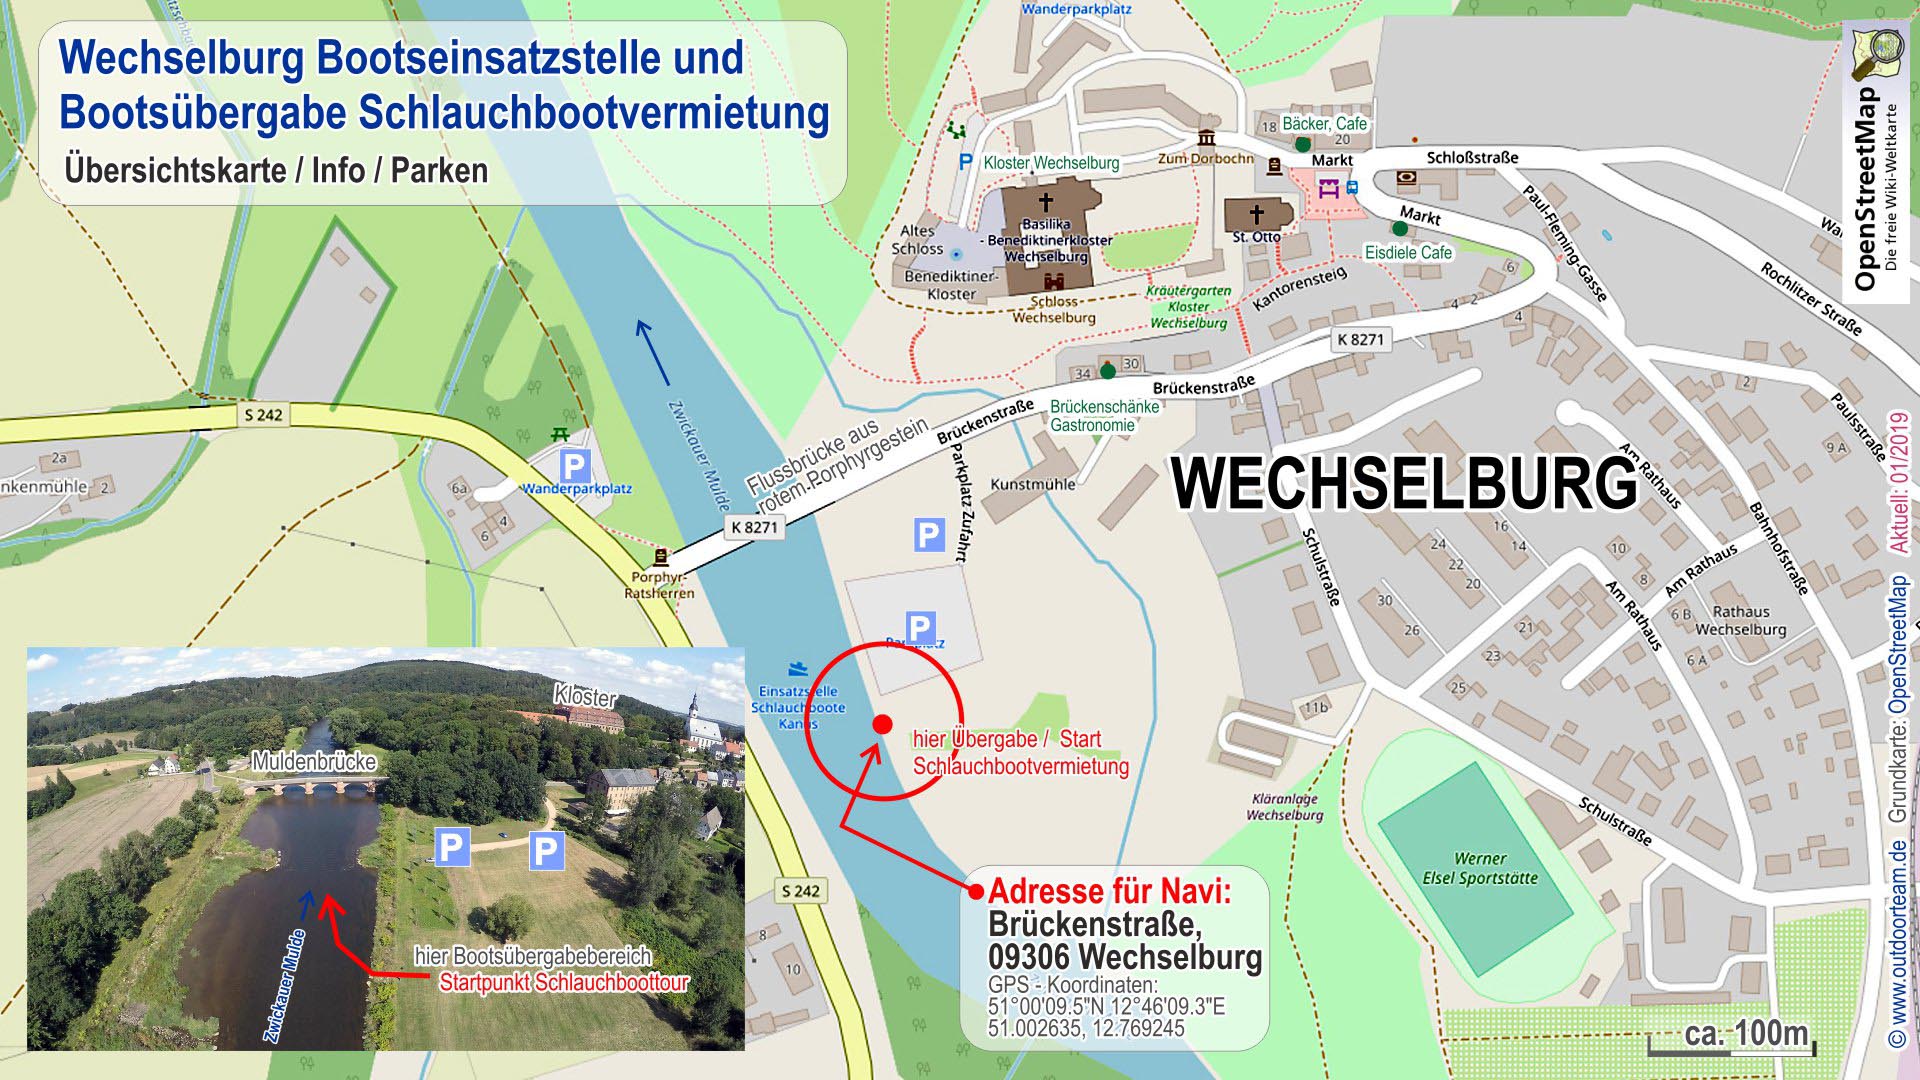 Stadtplan und Detailkarte von der Bootseinsatzstelle und Treffpunkt in Wechselburg (Schlauchbootvermietung Strecke E)